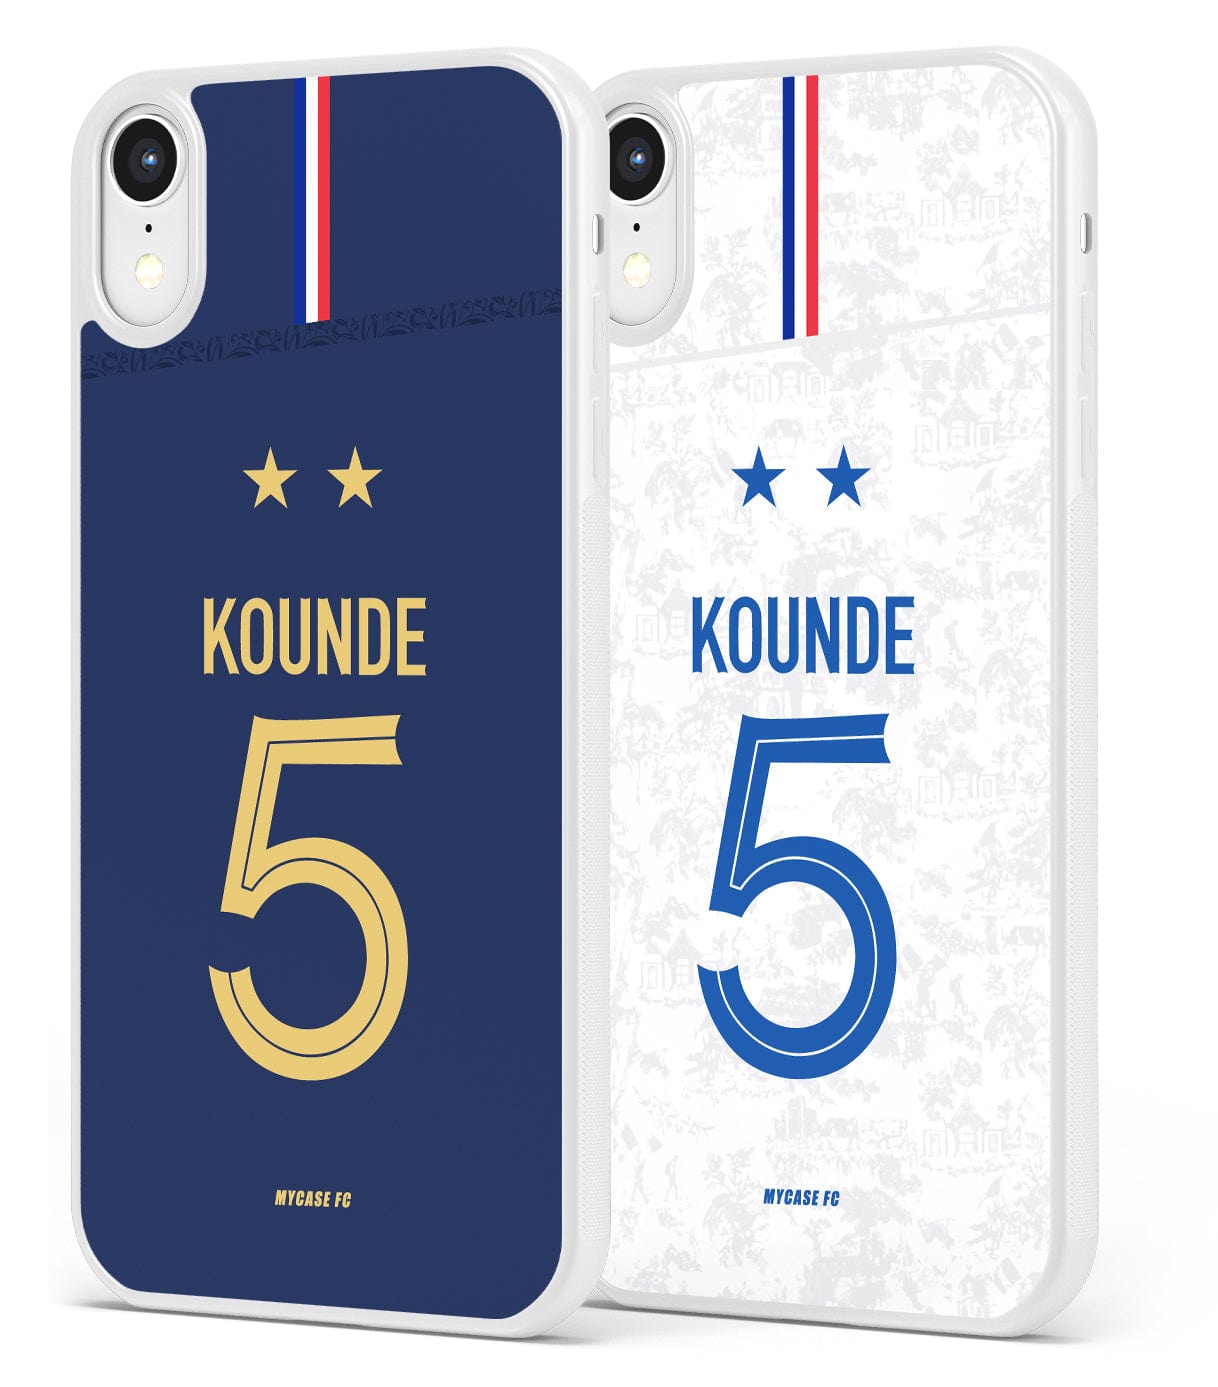 FRANCE - KOUNDÉ - MYCASE FC